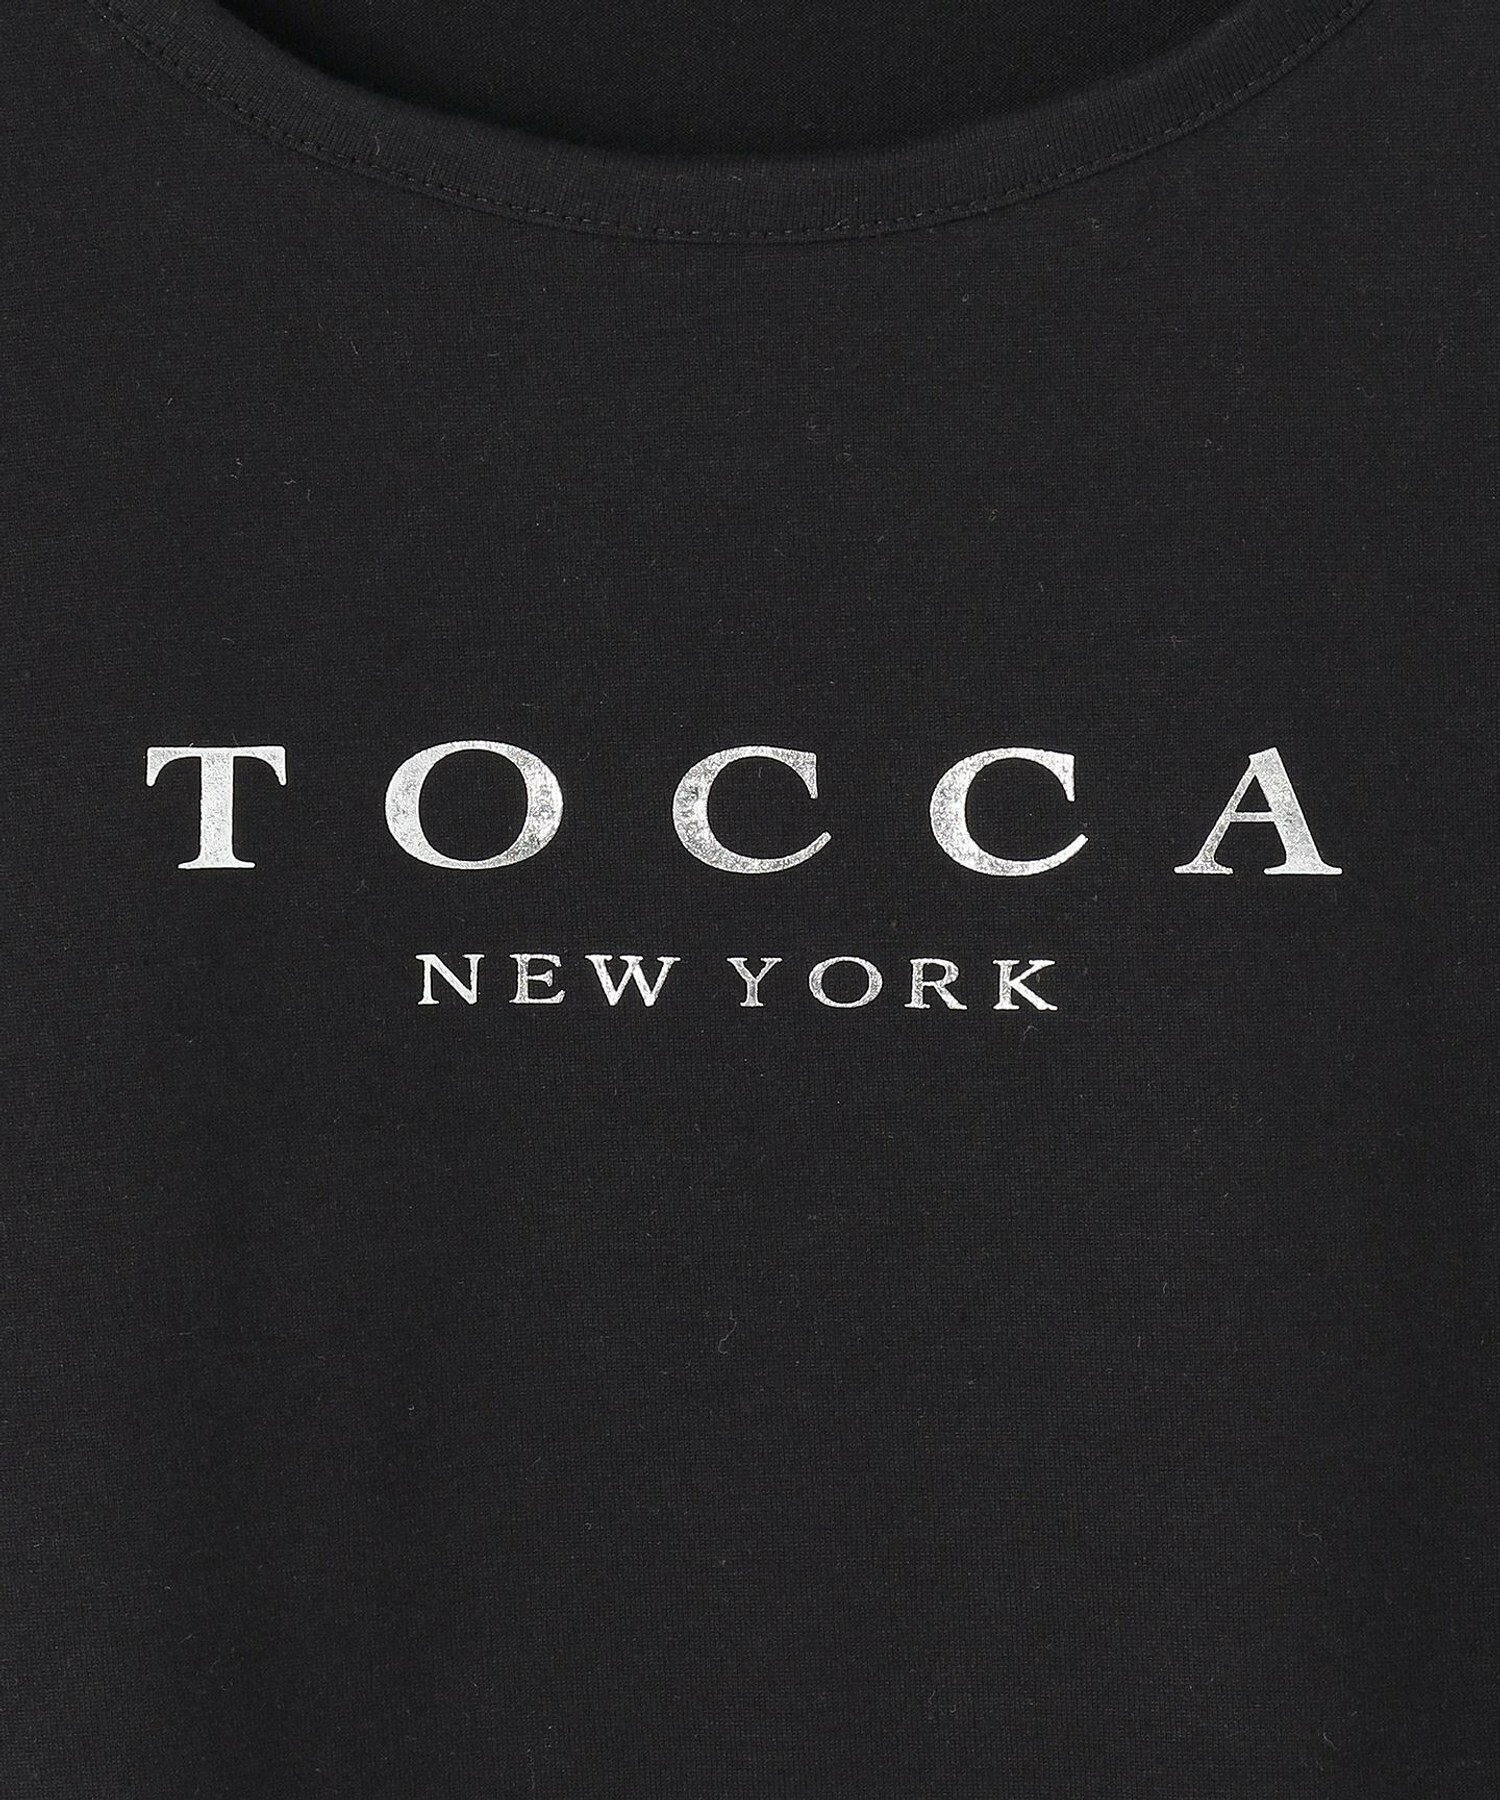 【洗える!】TOCCA NEW YORK LOGO TEE Tシャツ